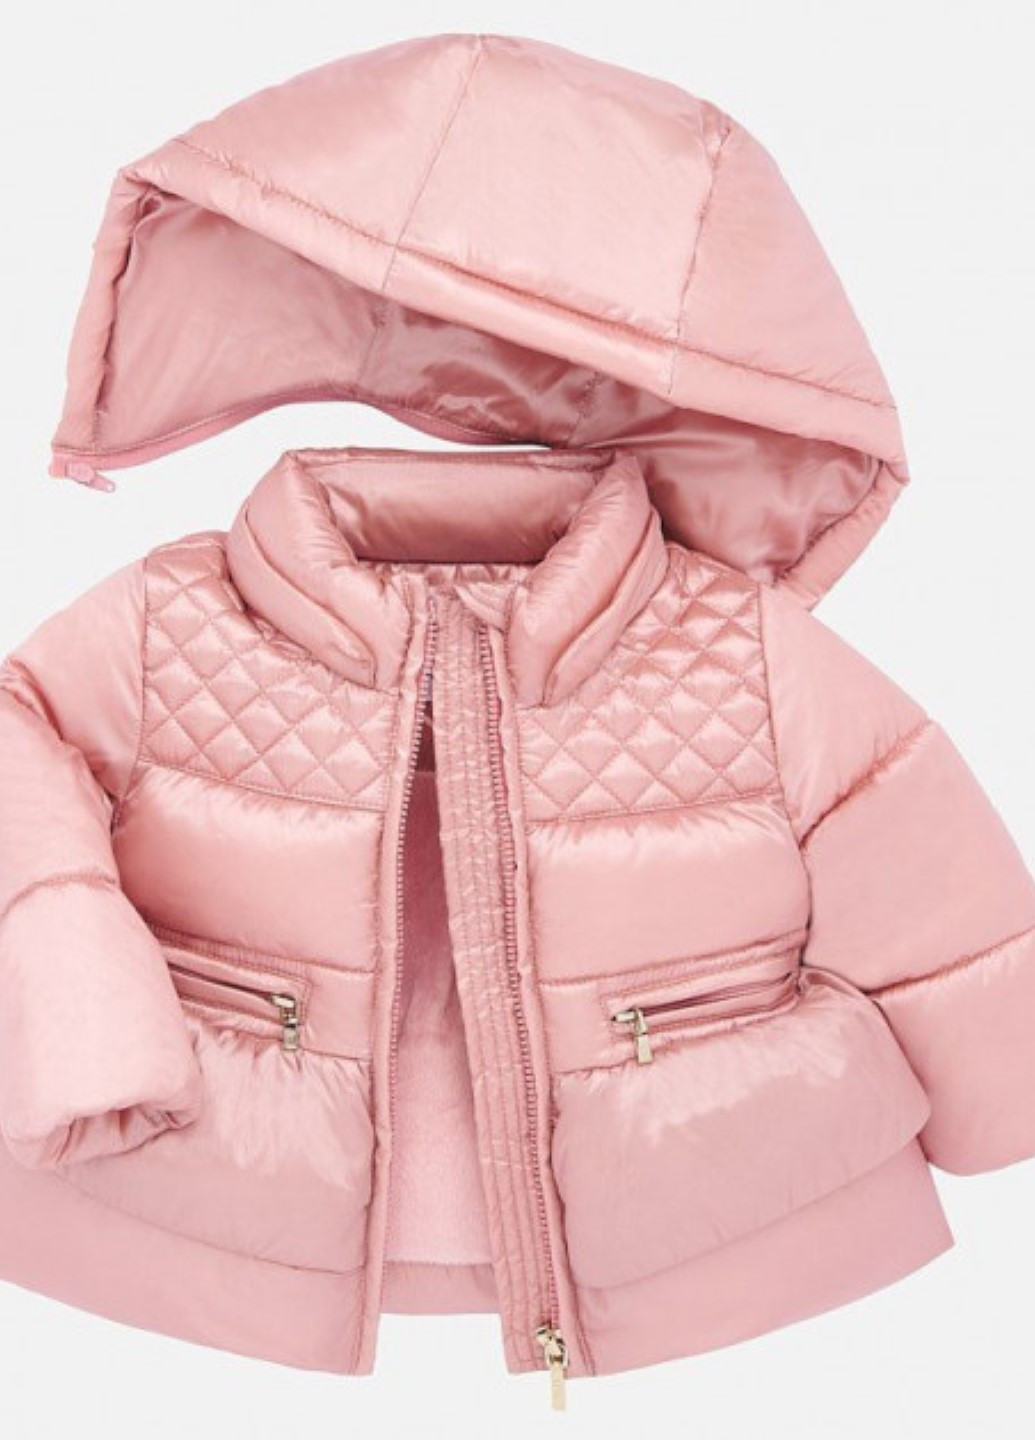 Розовая демисезонная куртка для девочки Mayoral 2434